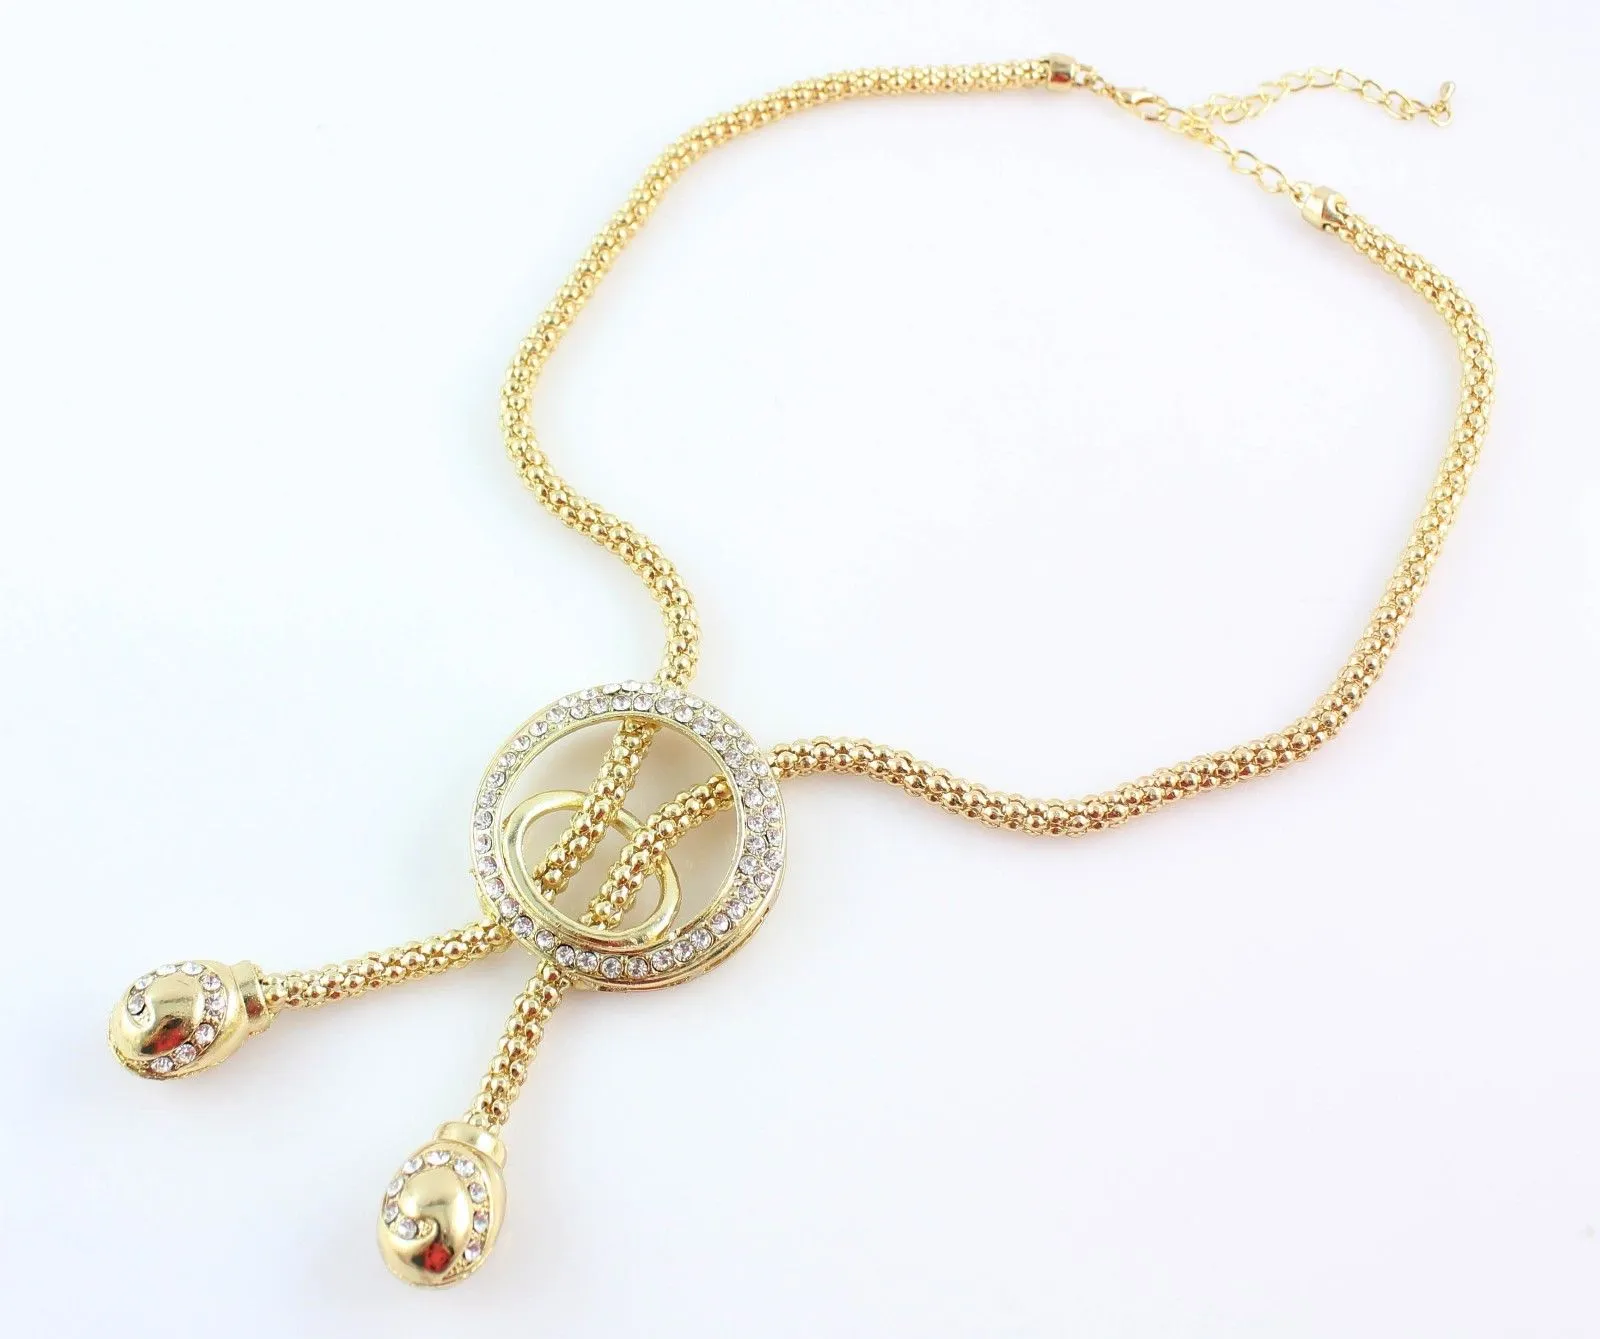 Moda banhado a ouro cadeia de cobra colar de cristal pulseira anel brincos conjuntos de jóias